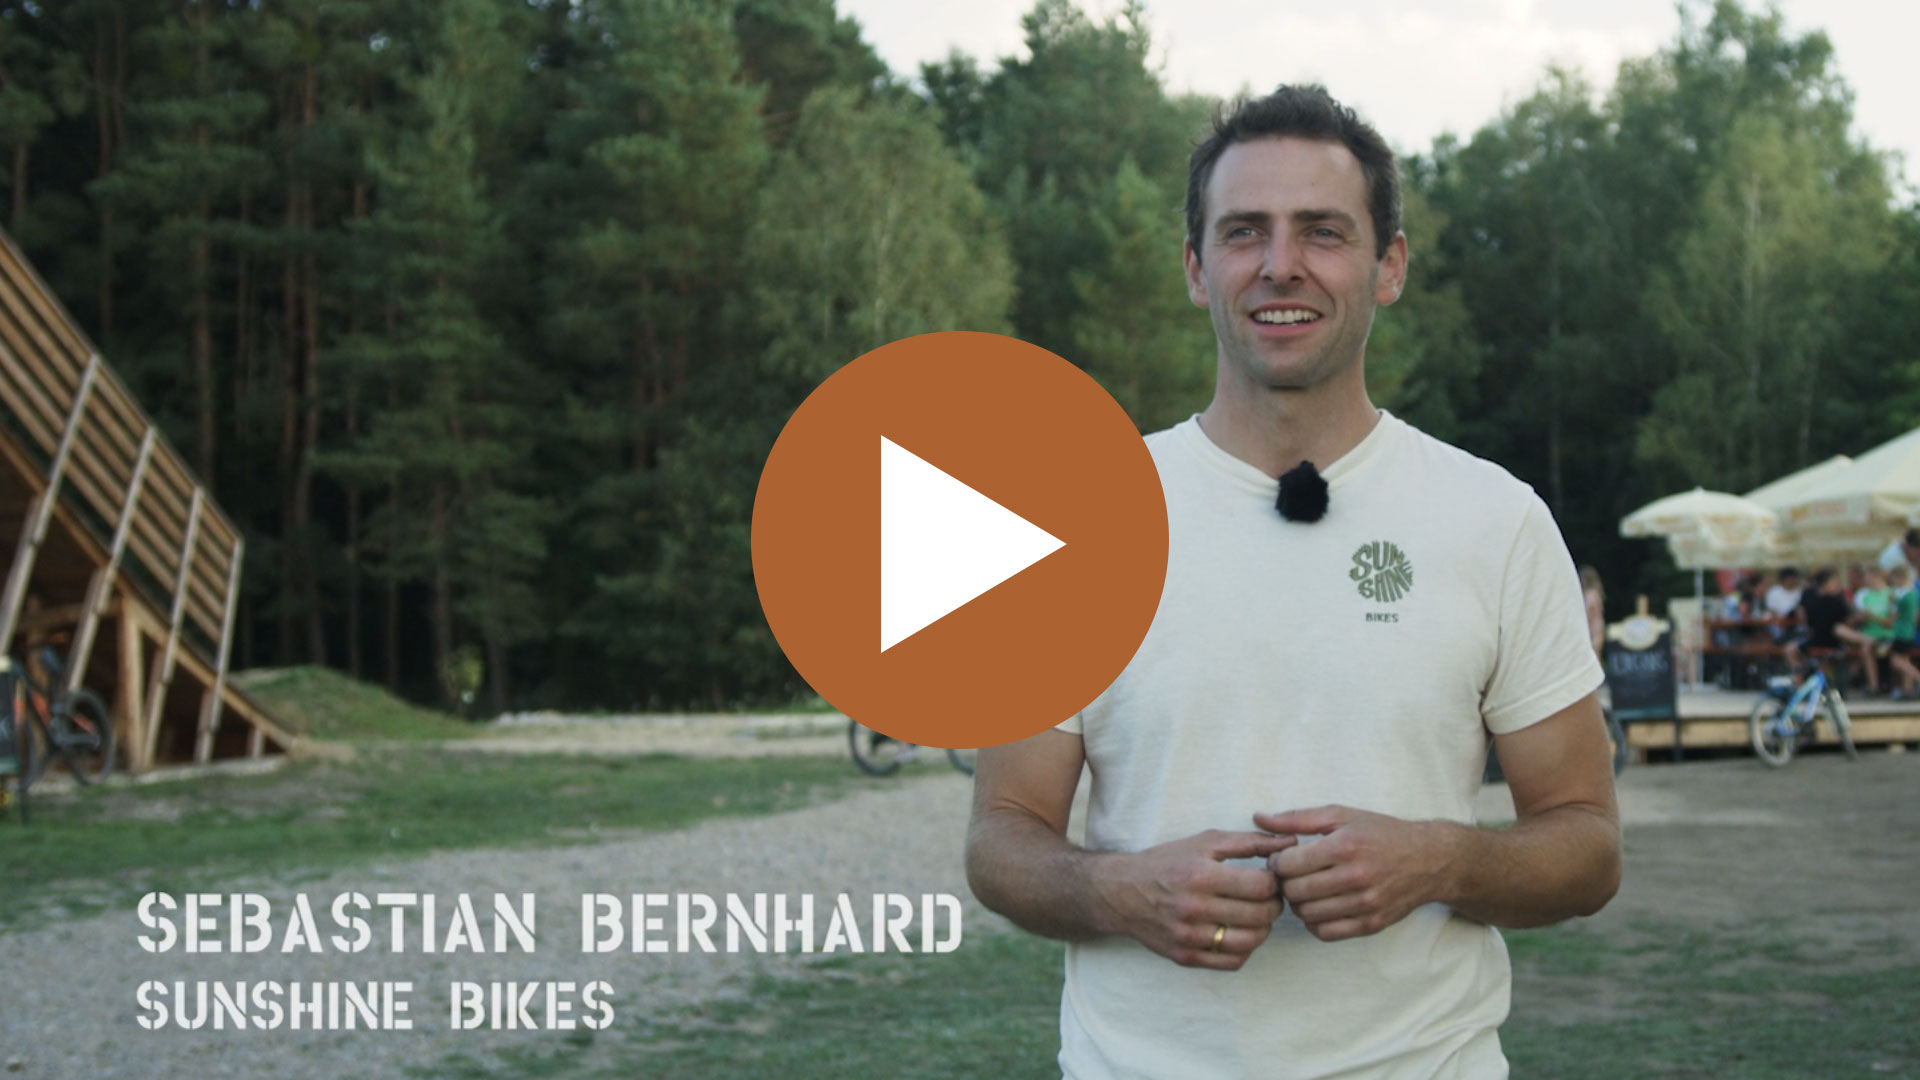 Videovorschau zum Film von Sunshine Bikes in Steinberg am See